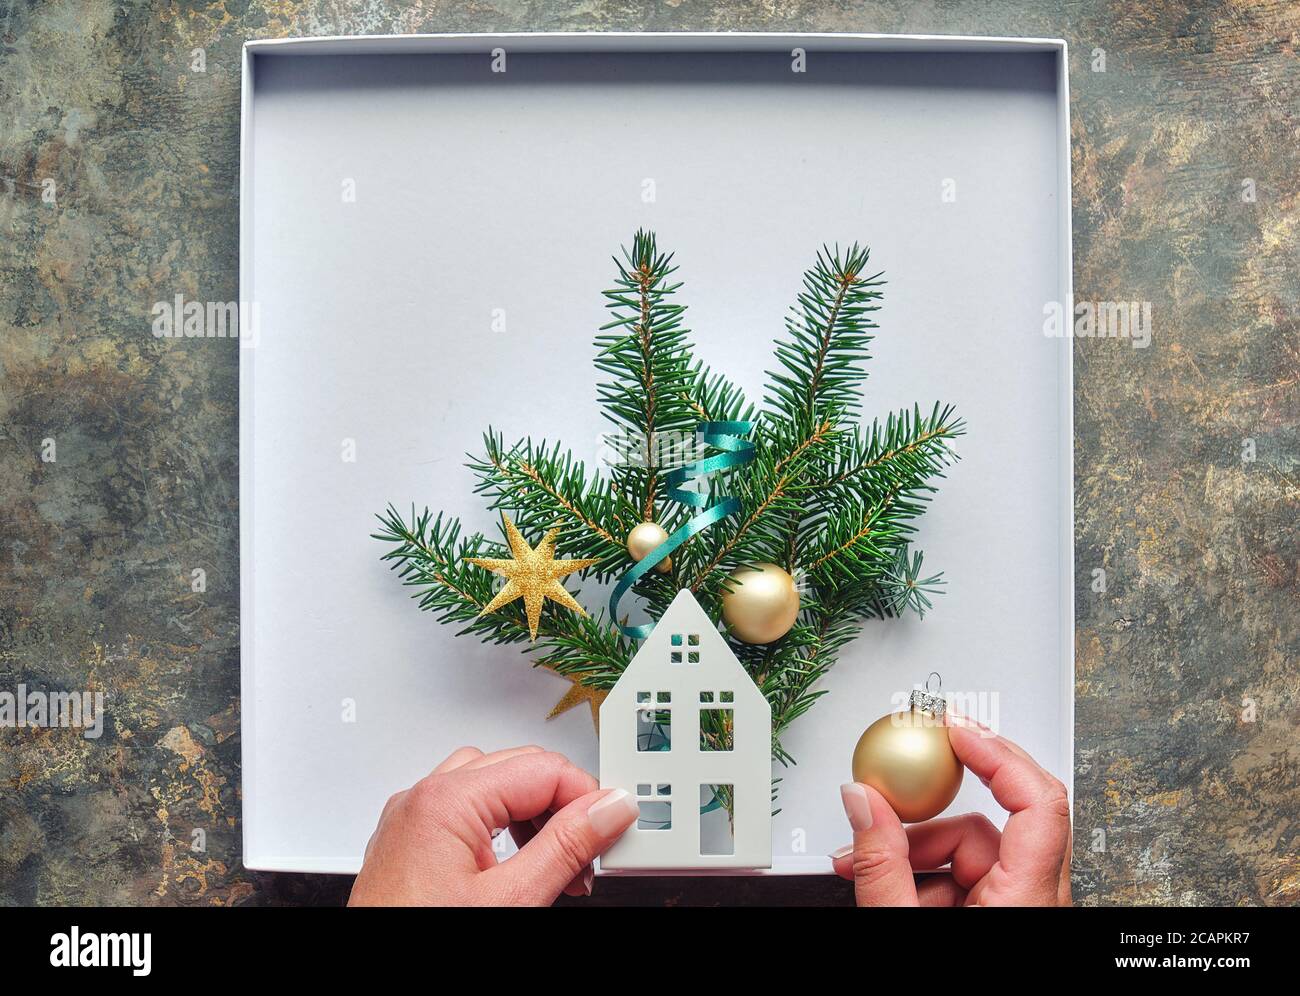 Décorations de Noël, plat avec les mains des femmes. Fabrication boîte décorée avec silhouette de maison, brindilles de sapin et breloques dorées, boules. Poser à plat sur dar Banque D'Images